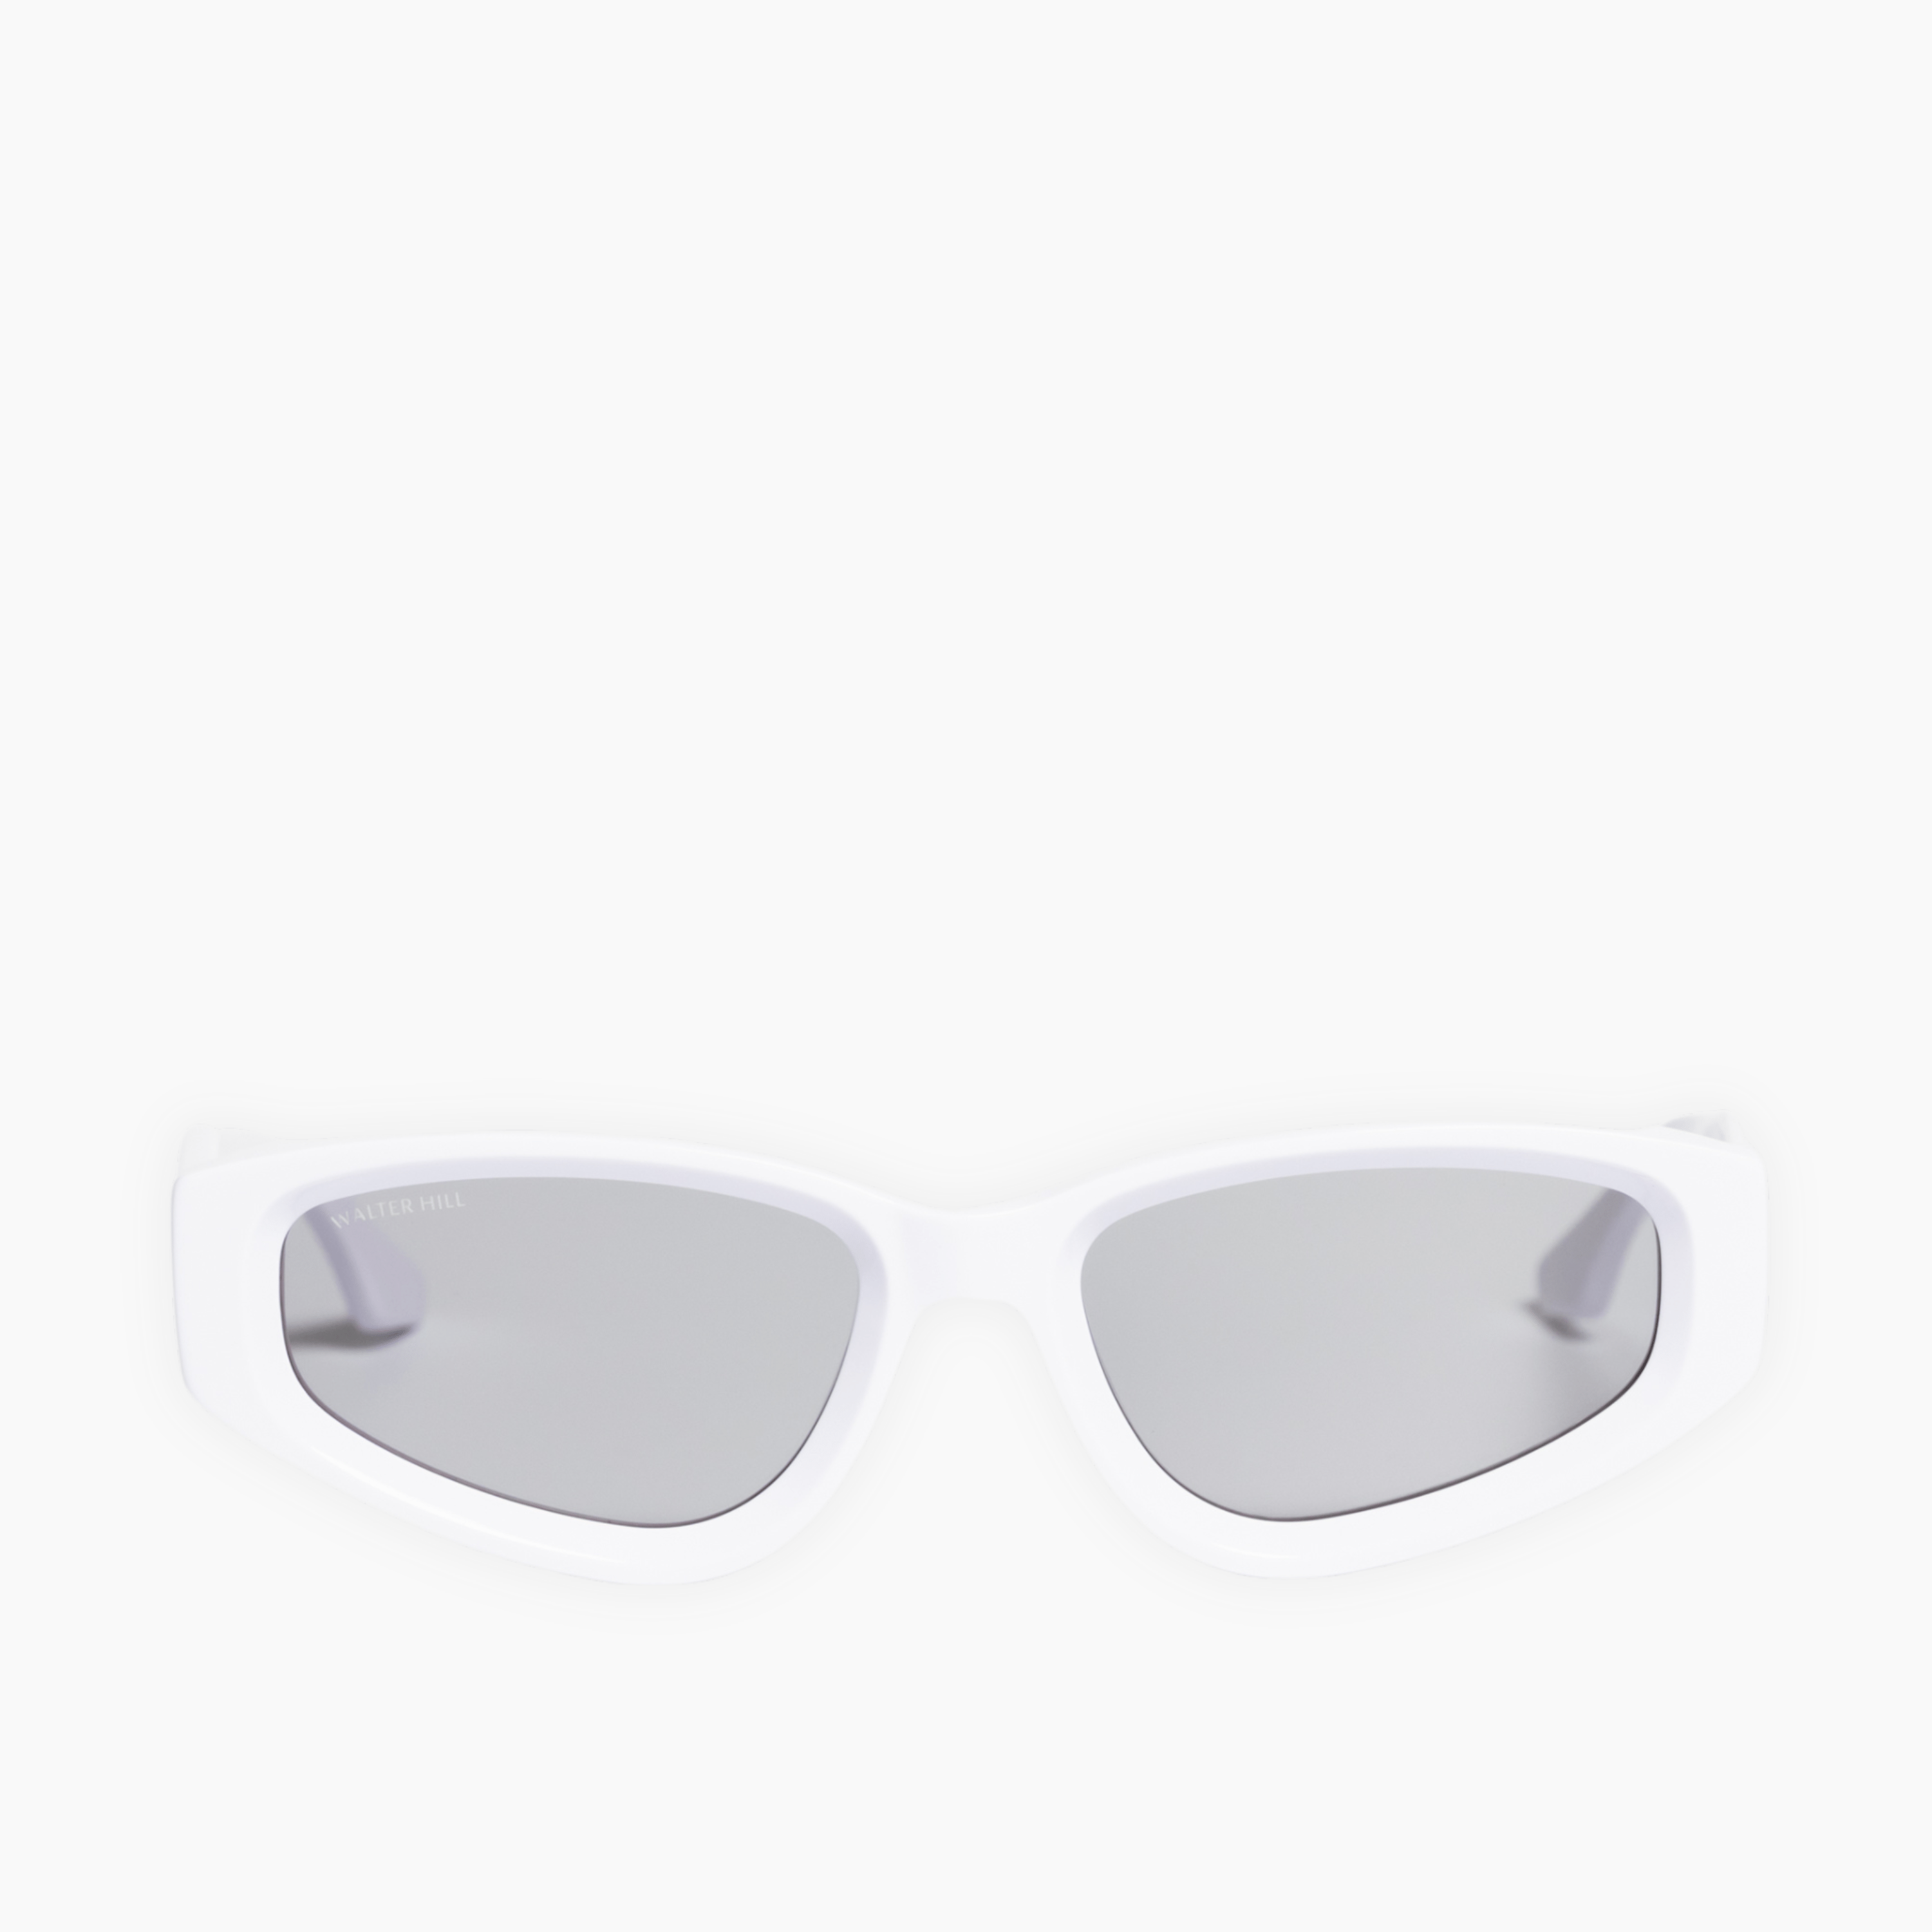 Walter Hill Sunglasses White / Standard / Cat.2 NIKKI - White